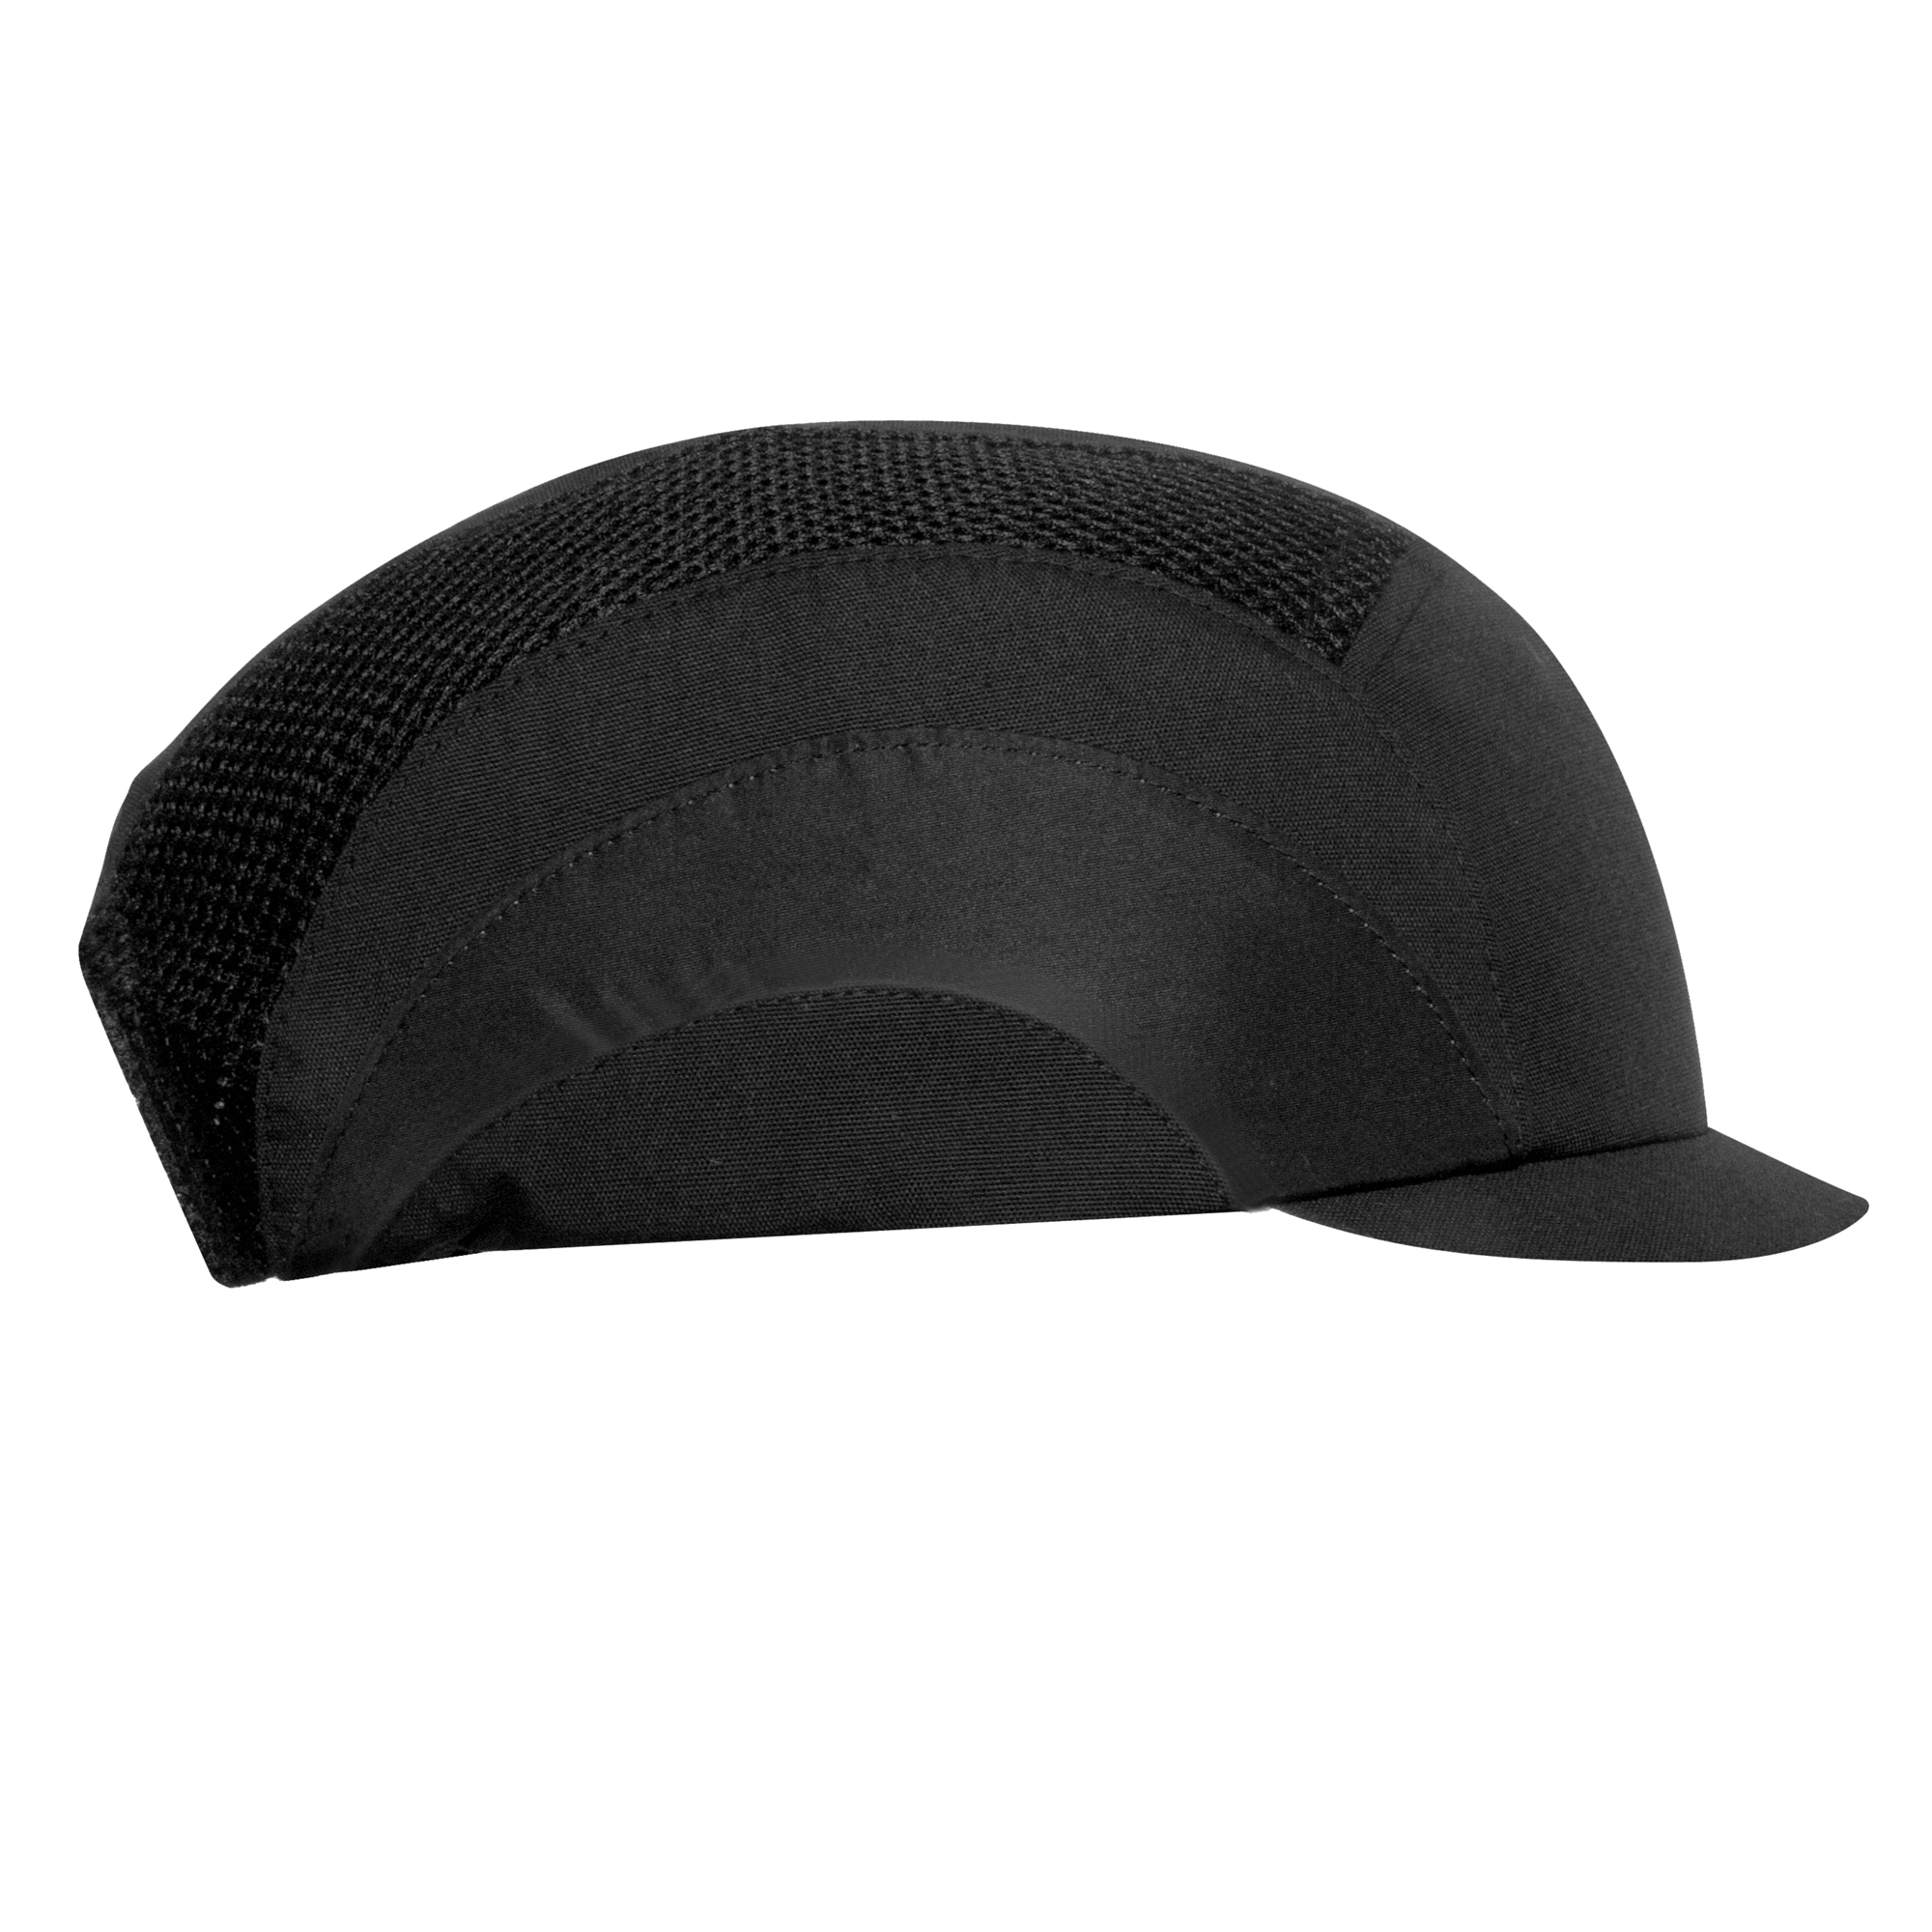 Hardcap™ A1+ Bump Cap - 2.5cm Peak - Black - No Reflective Piping